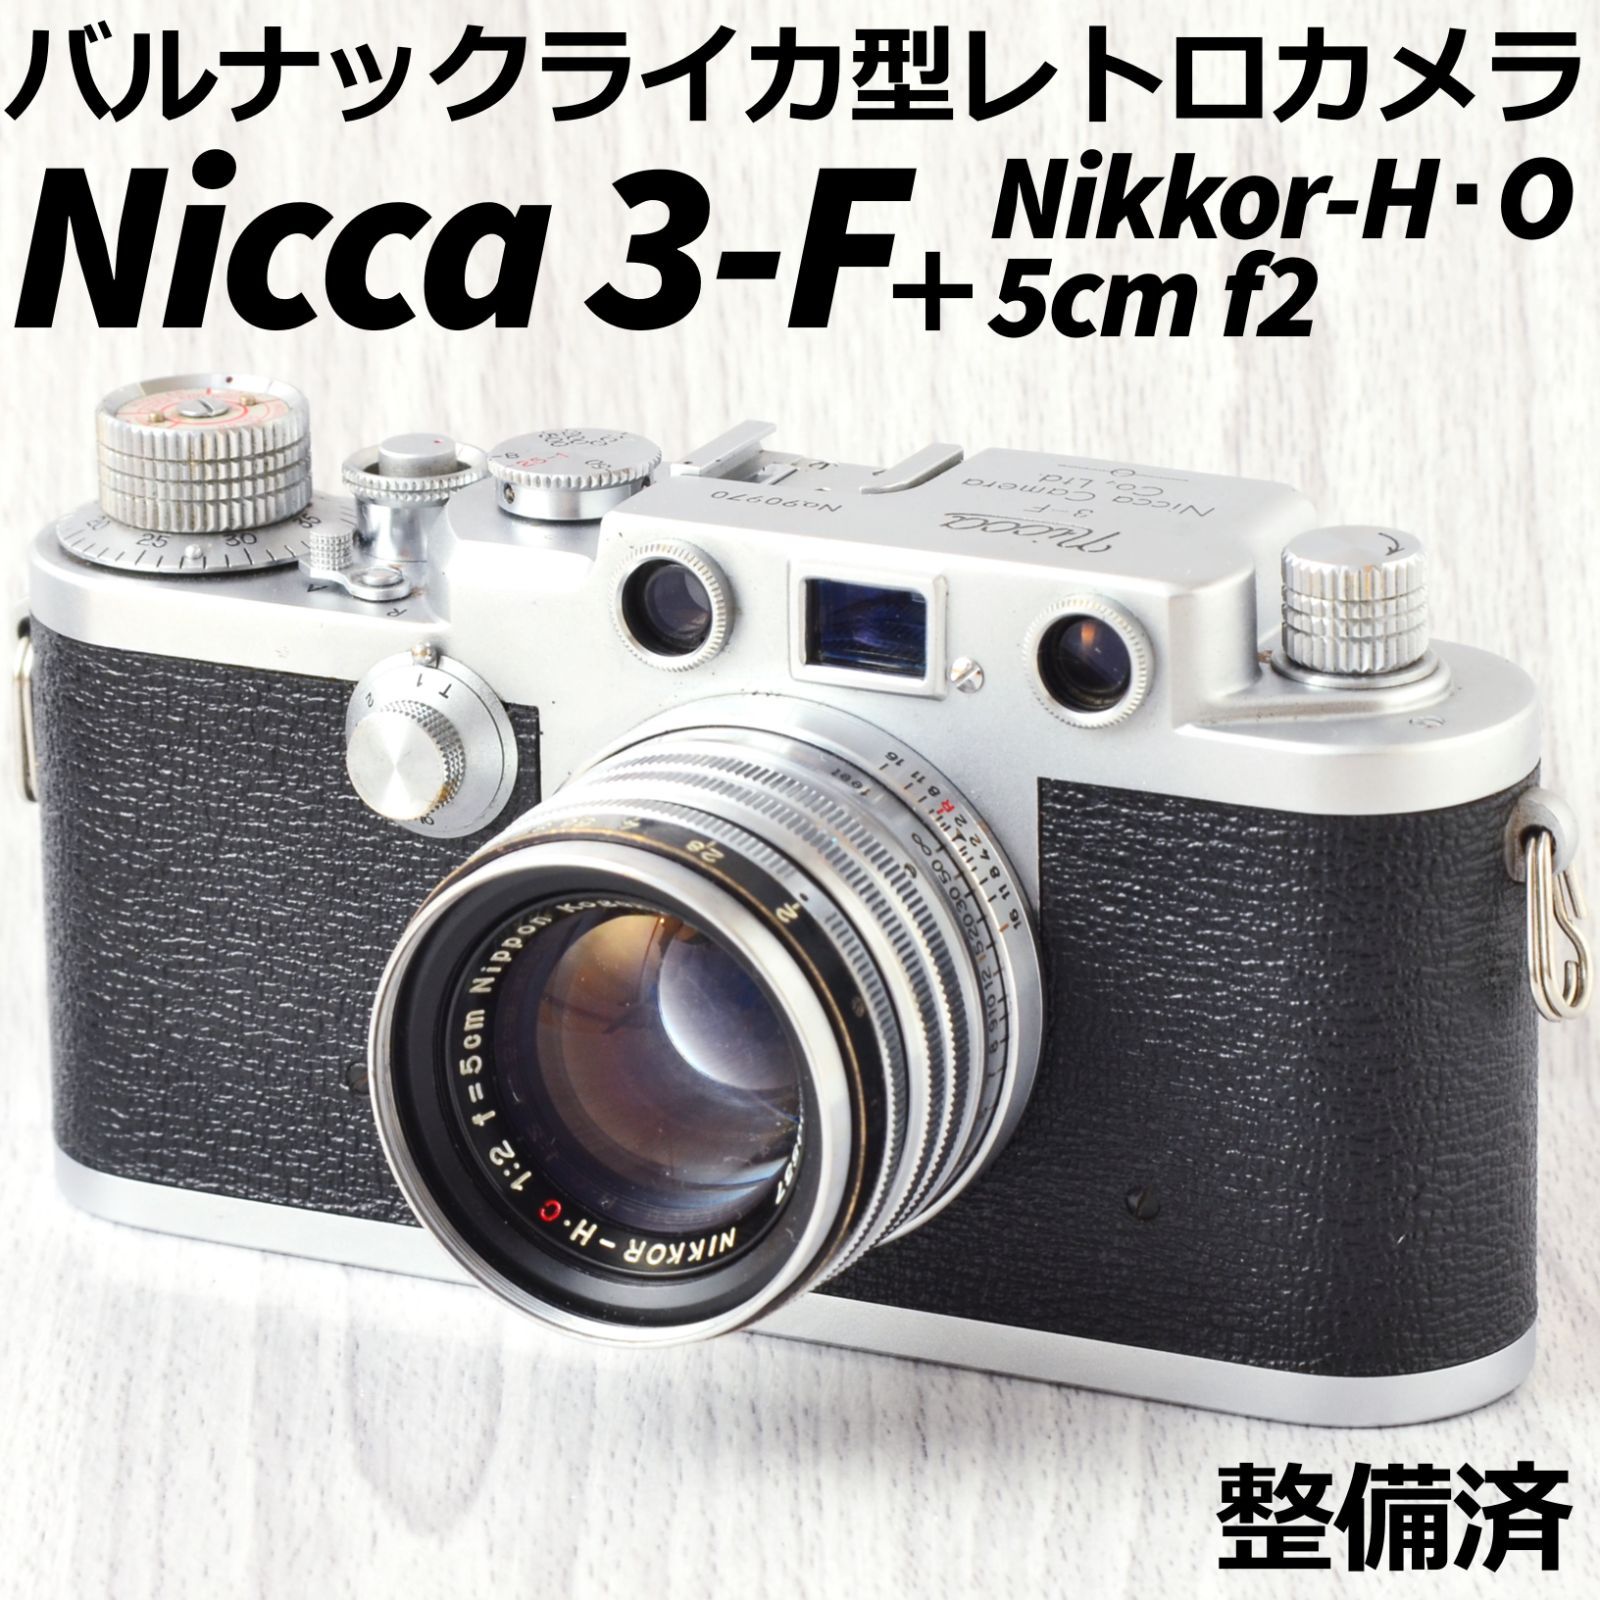 Nicca 3-F + Nikkor-H・O 5cm f2 ビンテージカメラ